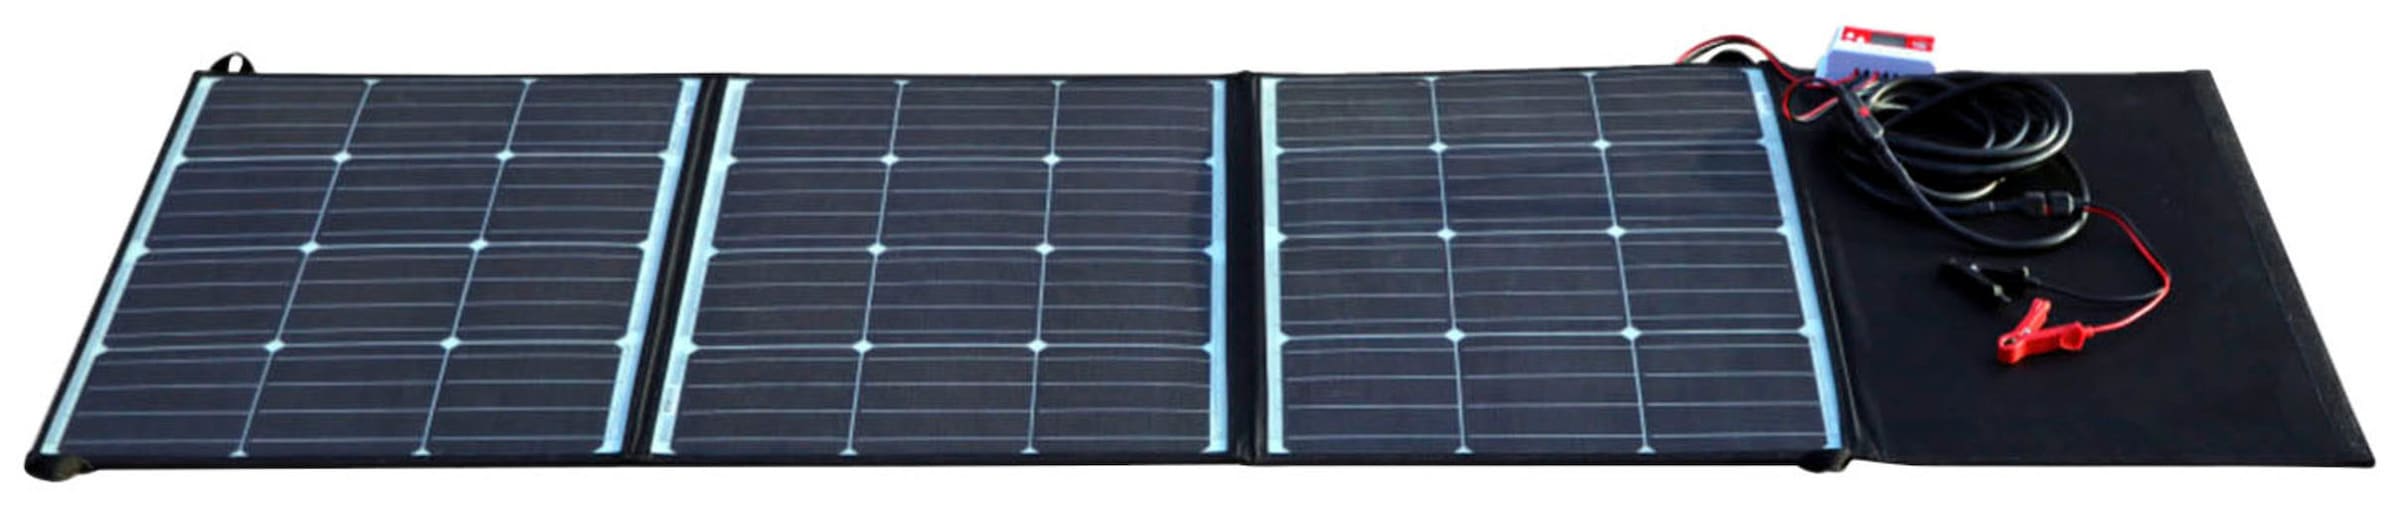 PEROBE Solarmodul »OUTDOOR Solartasche 175W«, (Set), mit Solarladeregler, USB Ladeanschluss, Klemmen und Verbindungskabel